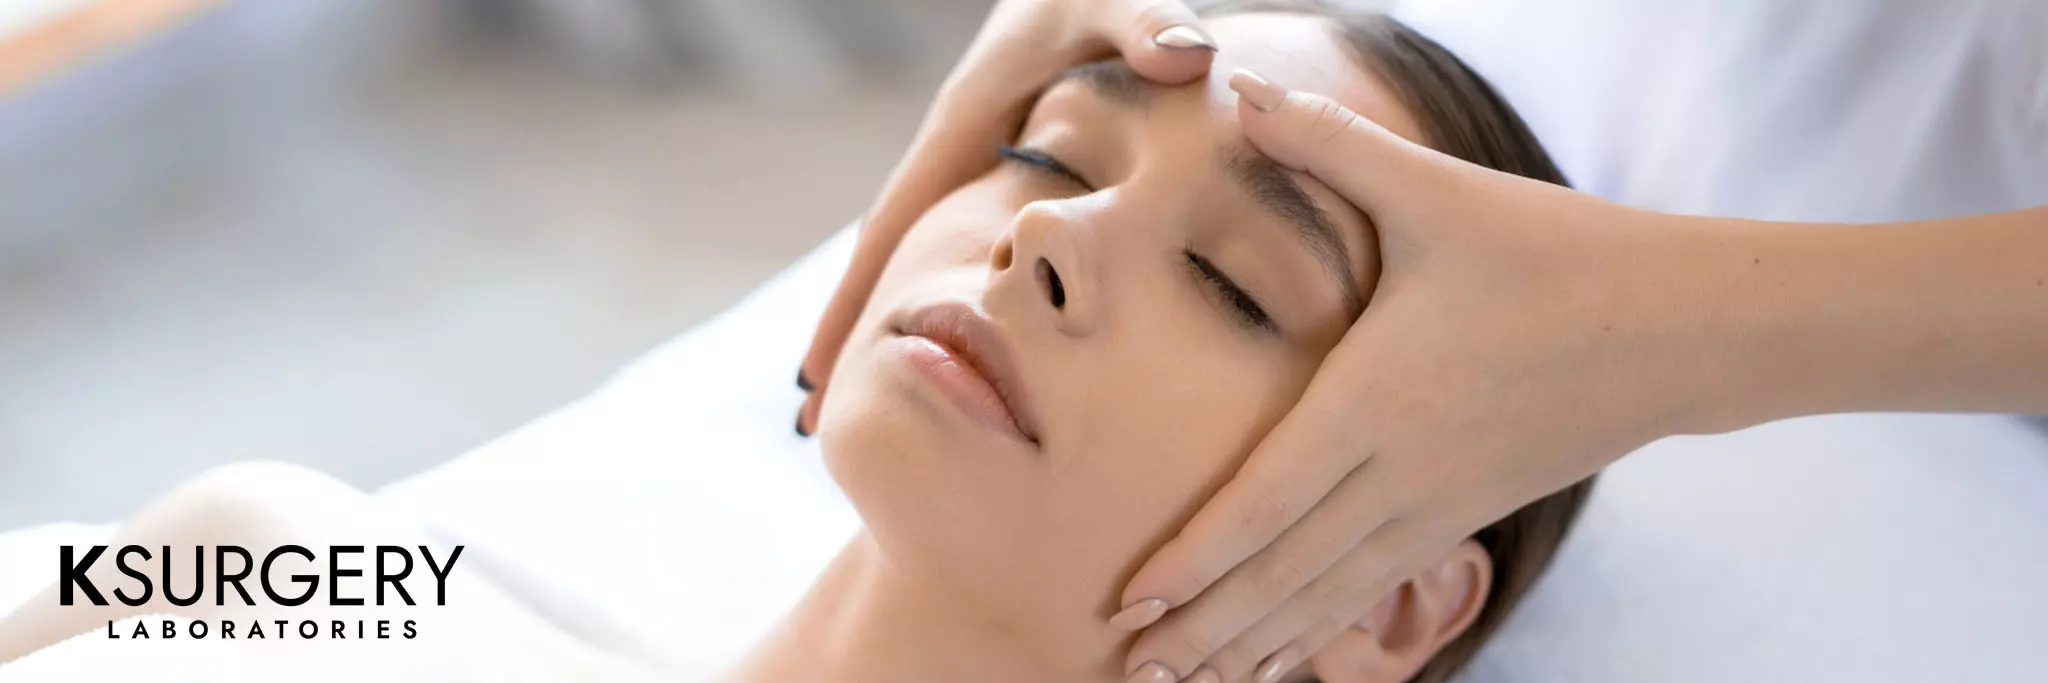 Zdjęcie kobiety, której zostaje wykonany masaż twarzy